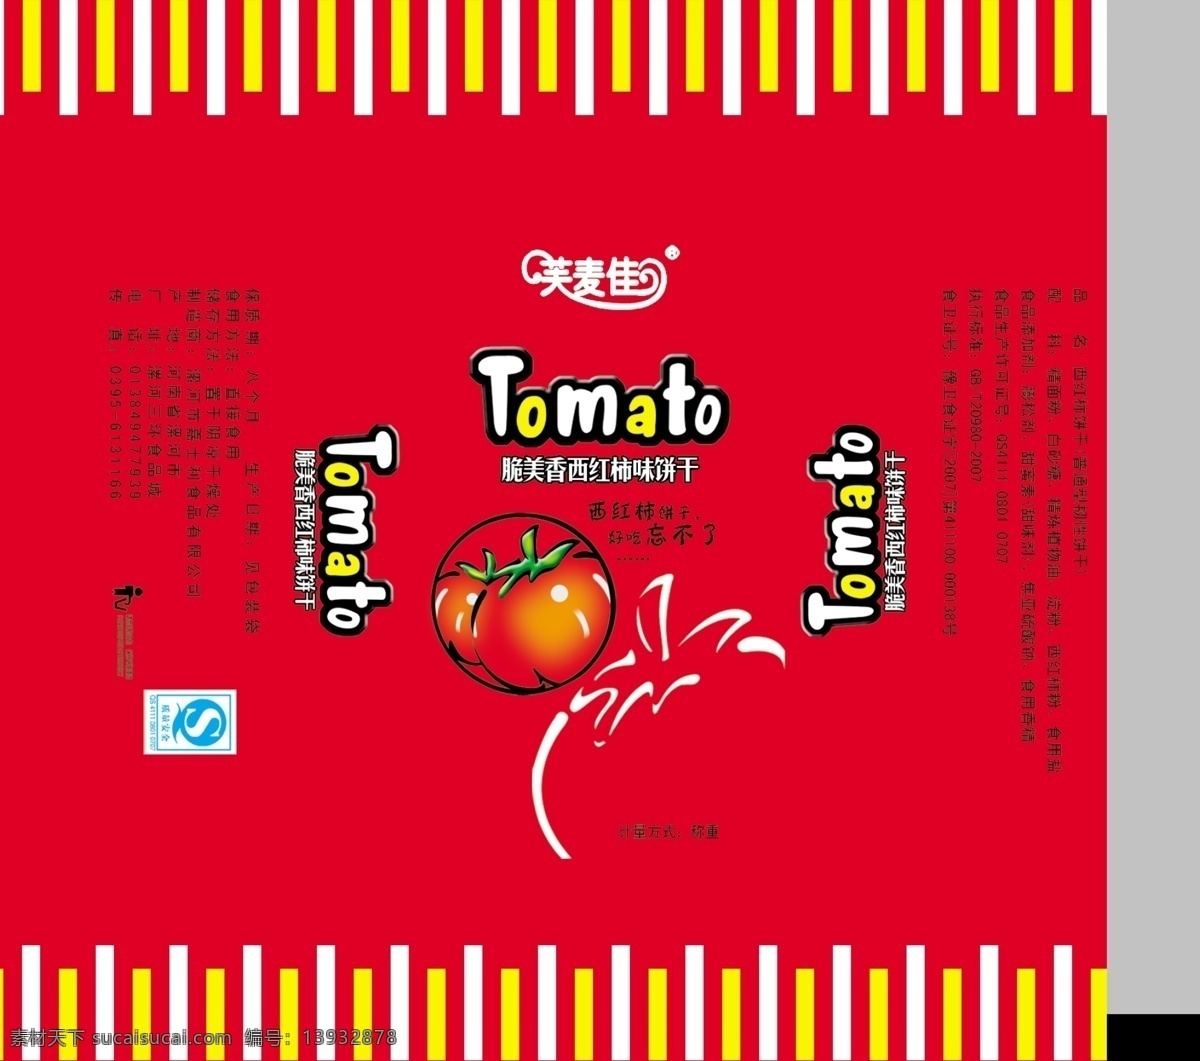 饼干包装 饼干 包装 西红柿 卡通番茄 线条番茄 造型 食品 包装设计 广告设计模板 源文件